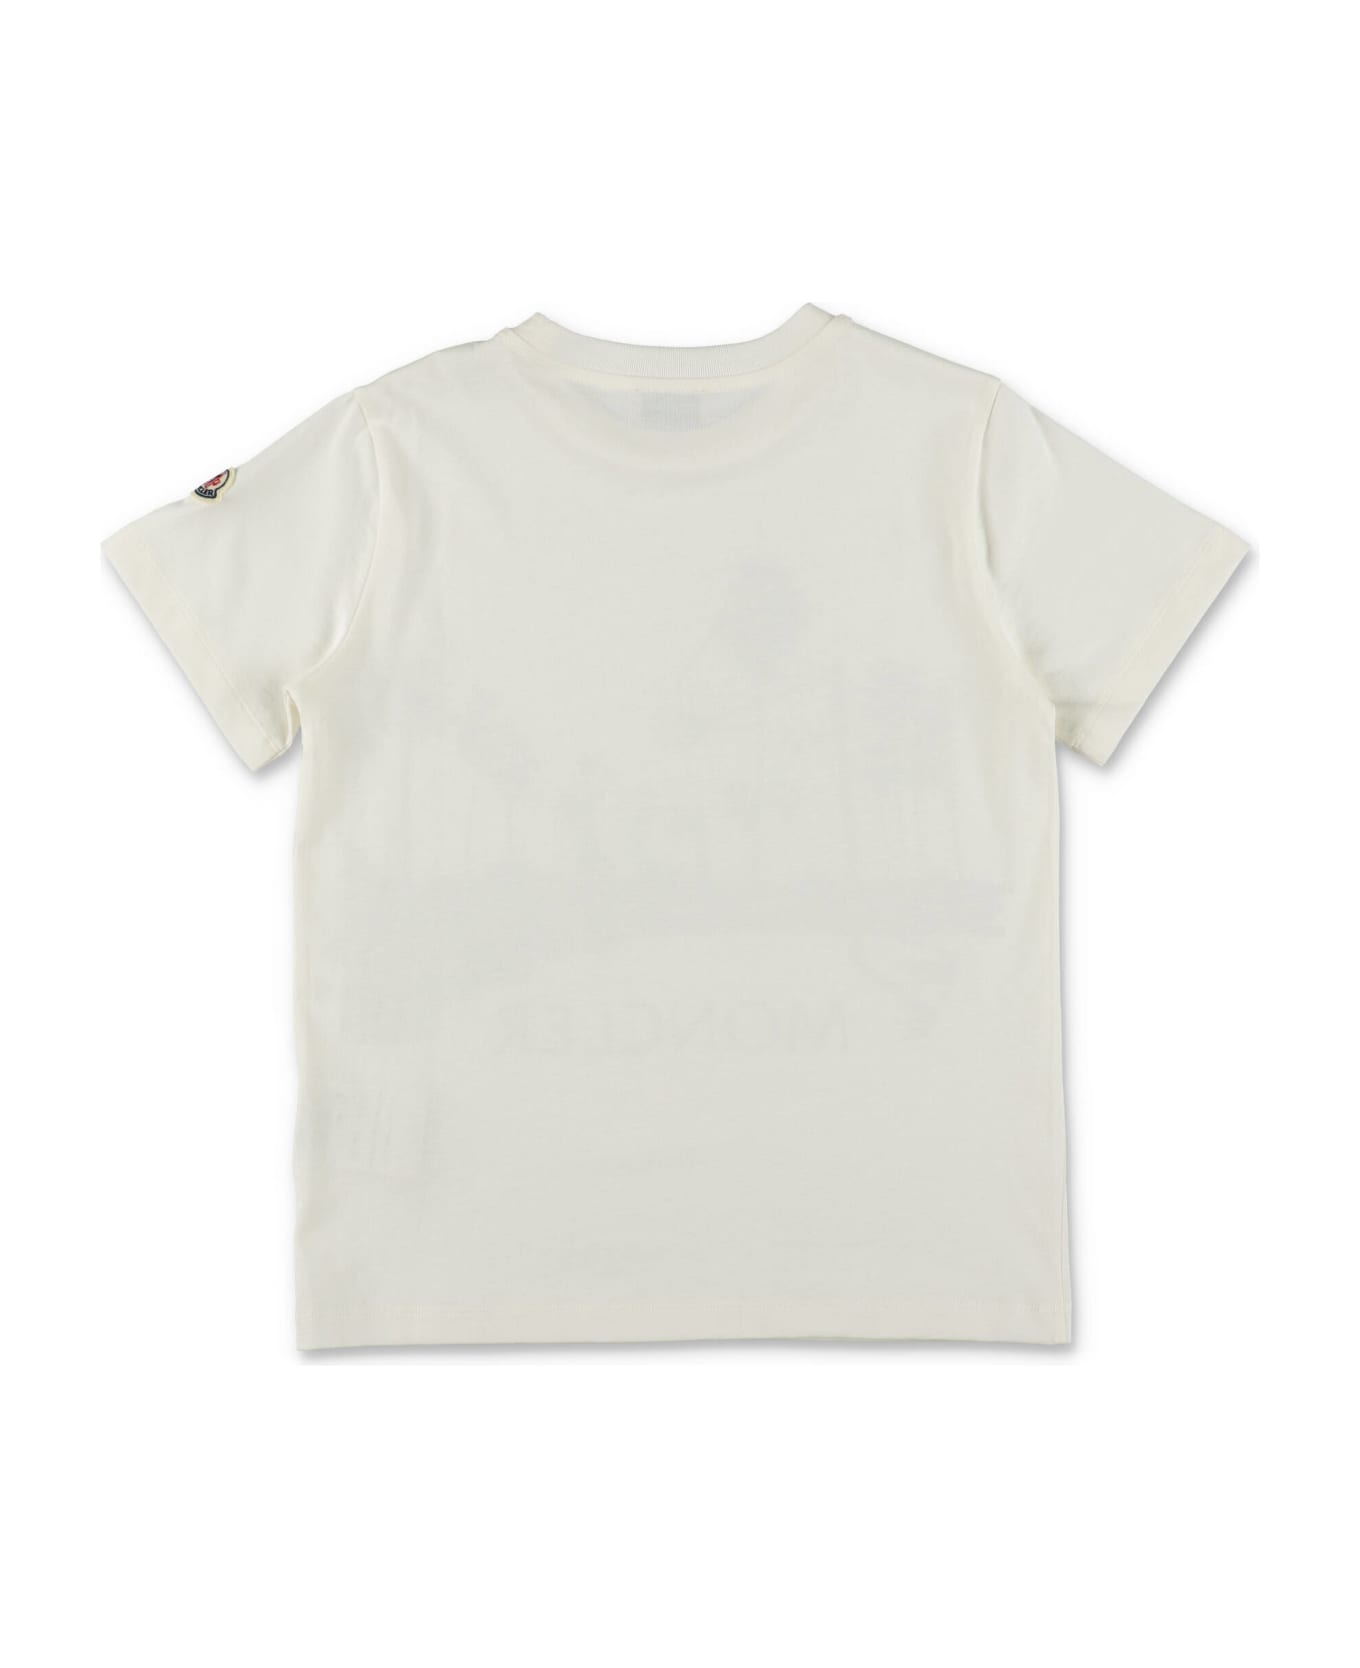 Moncler T-shirt Bianca In Jersey Di Cotone Bambino - Bianco